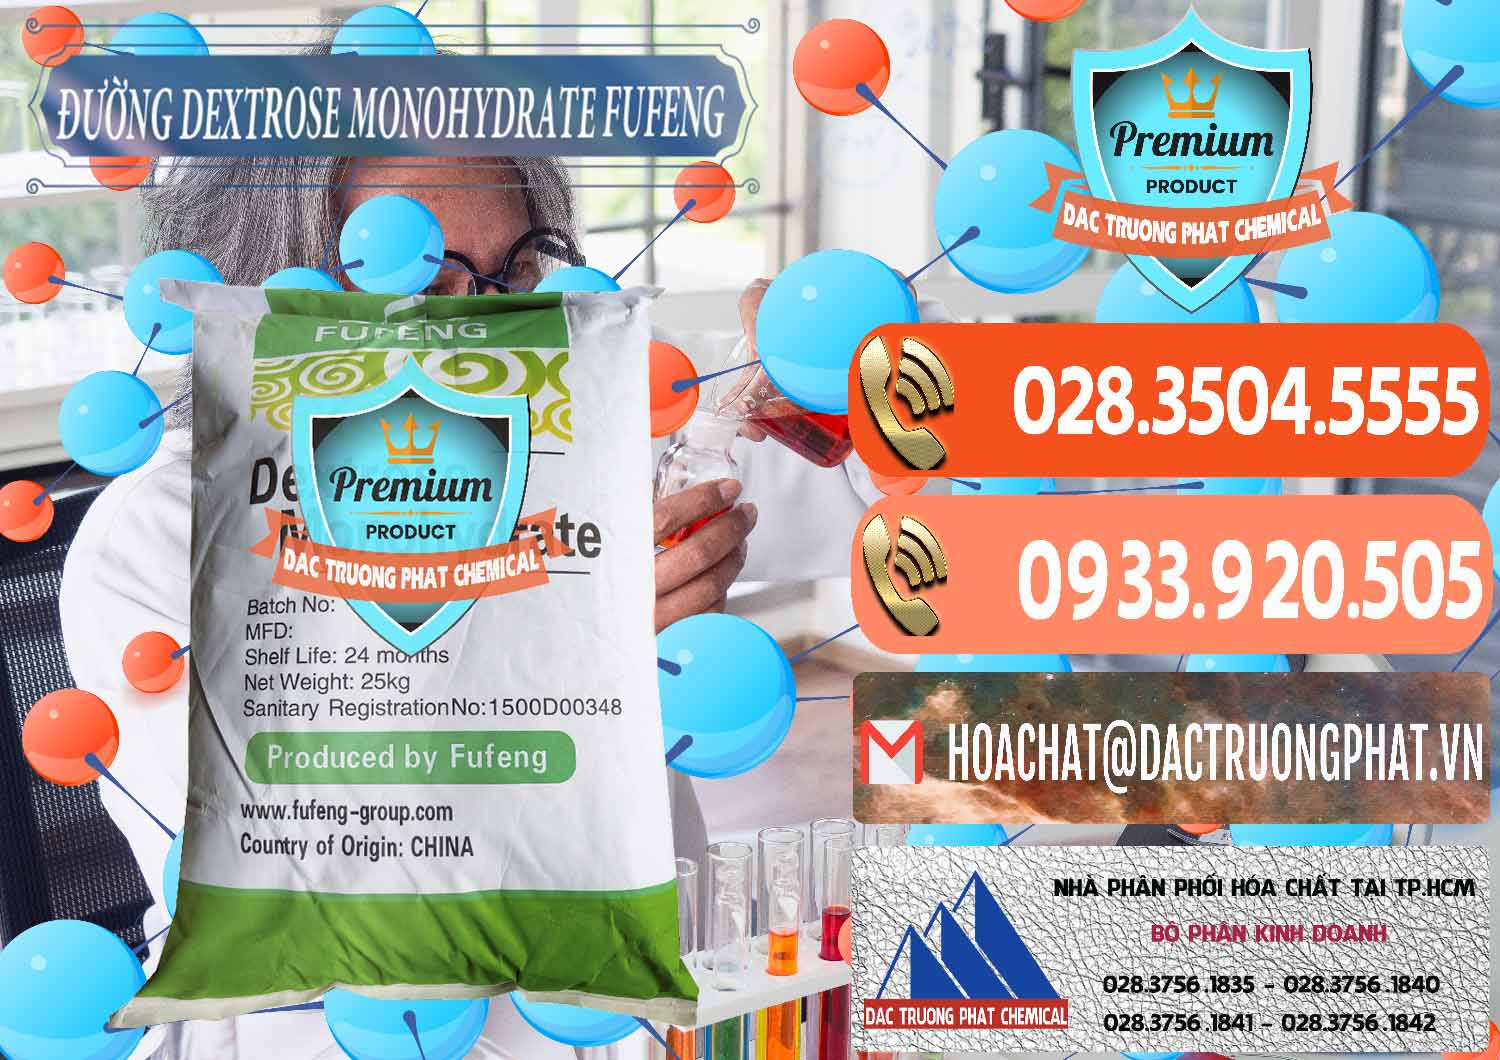 Cty chuyên kinh doanh - bán Đường Dextrose Monohydrate Food Grade Fufeng Trung Quốc China - 0223 - Nơi bán - phân phối hóa chất tại TP.HCM - hoachatmientay.com